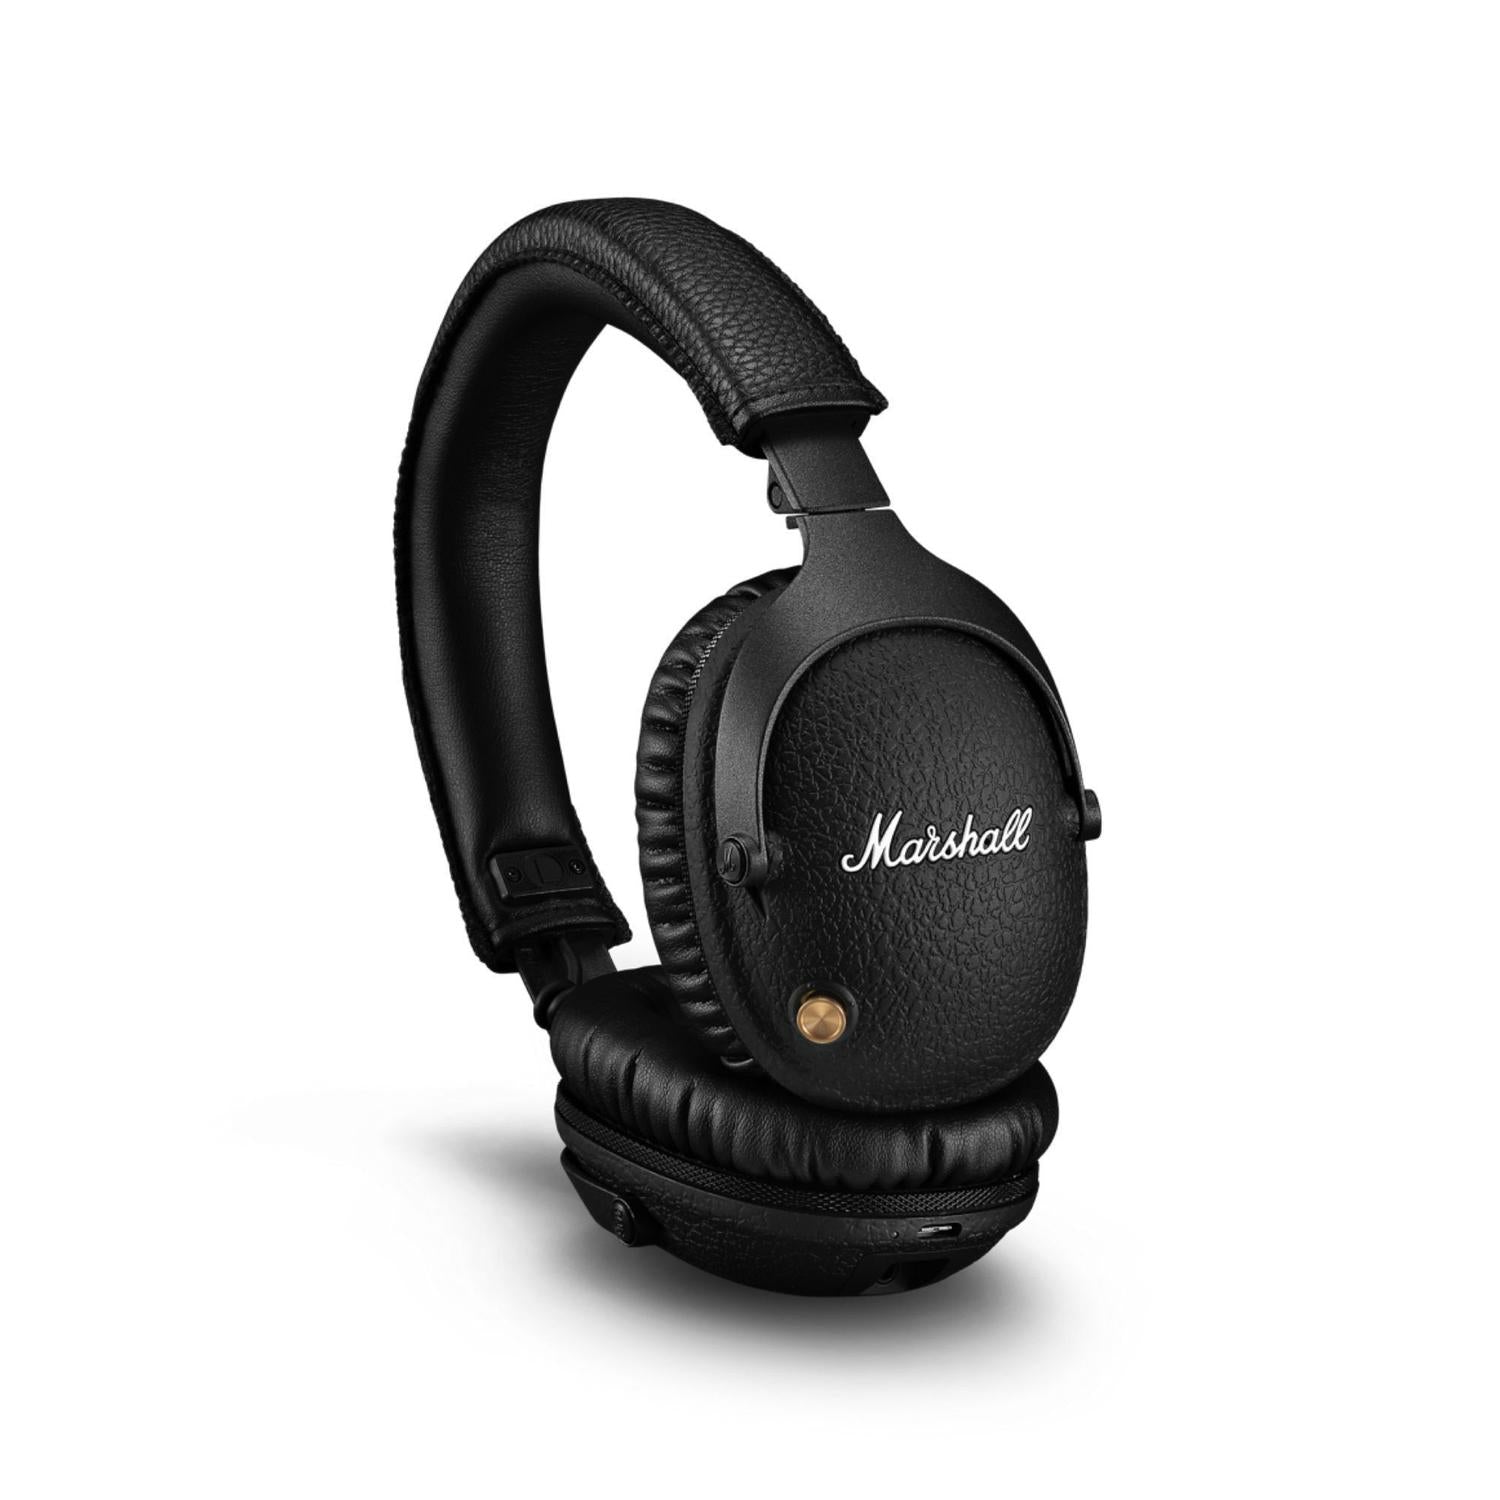 Marshall-auriculares inalámbricos con Bluetooth, audífonos